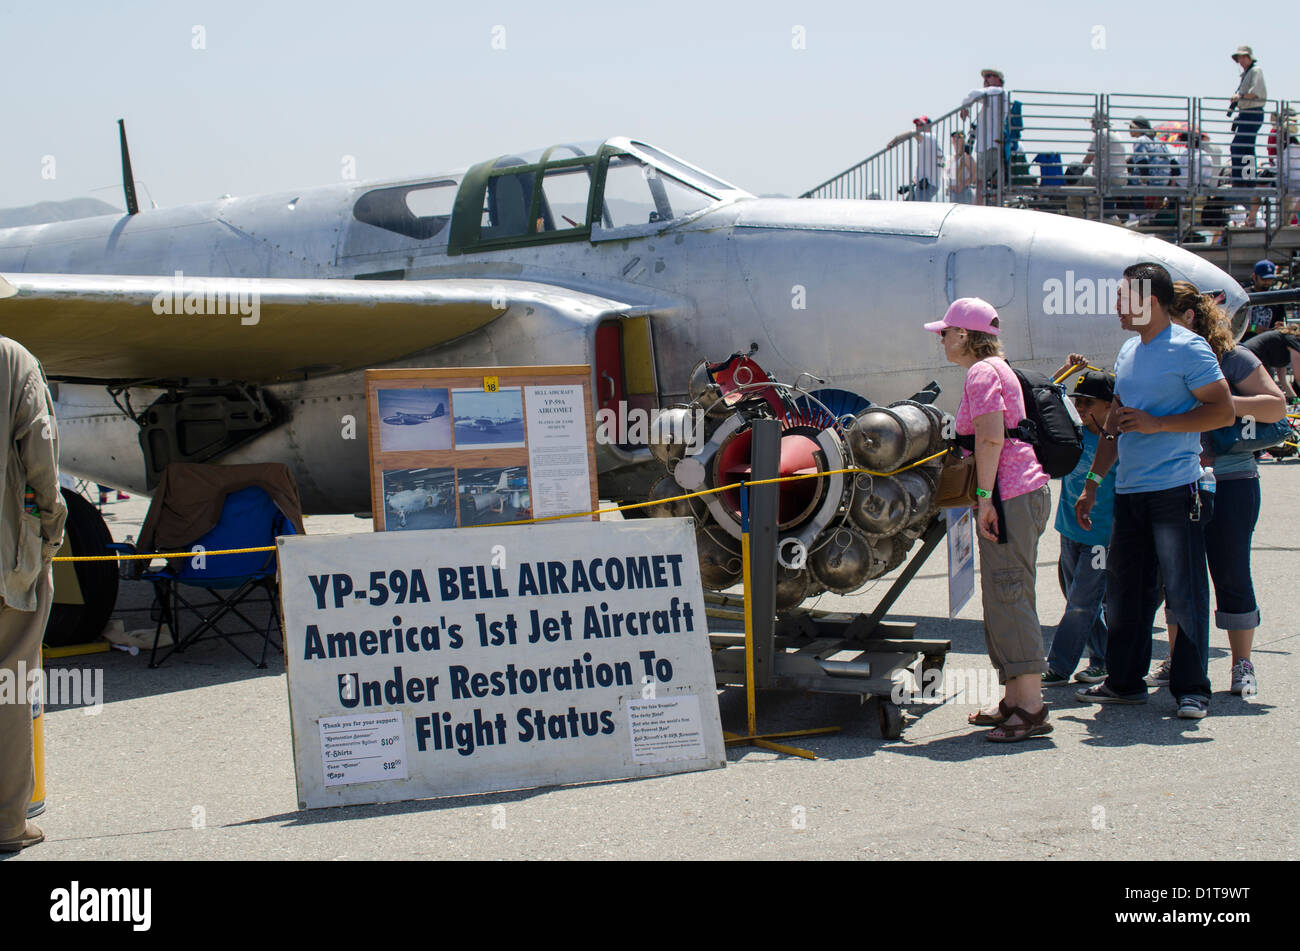 Un affichage à l'air Planes of Fame Museum, au cours de l'Air Show Chino, Chino, Californie, USA Banque D'Images